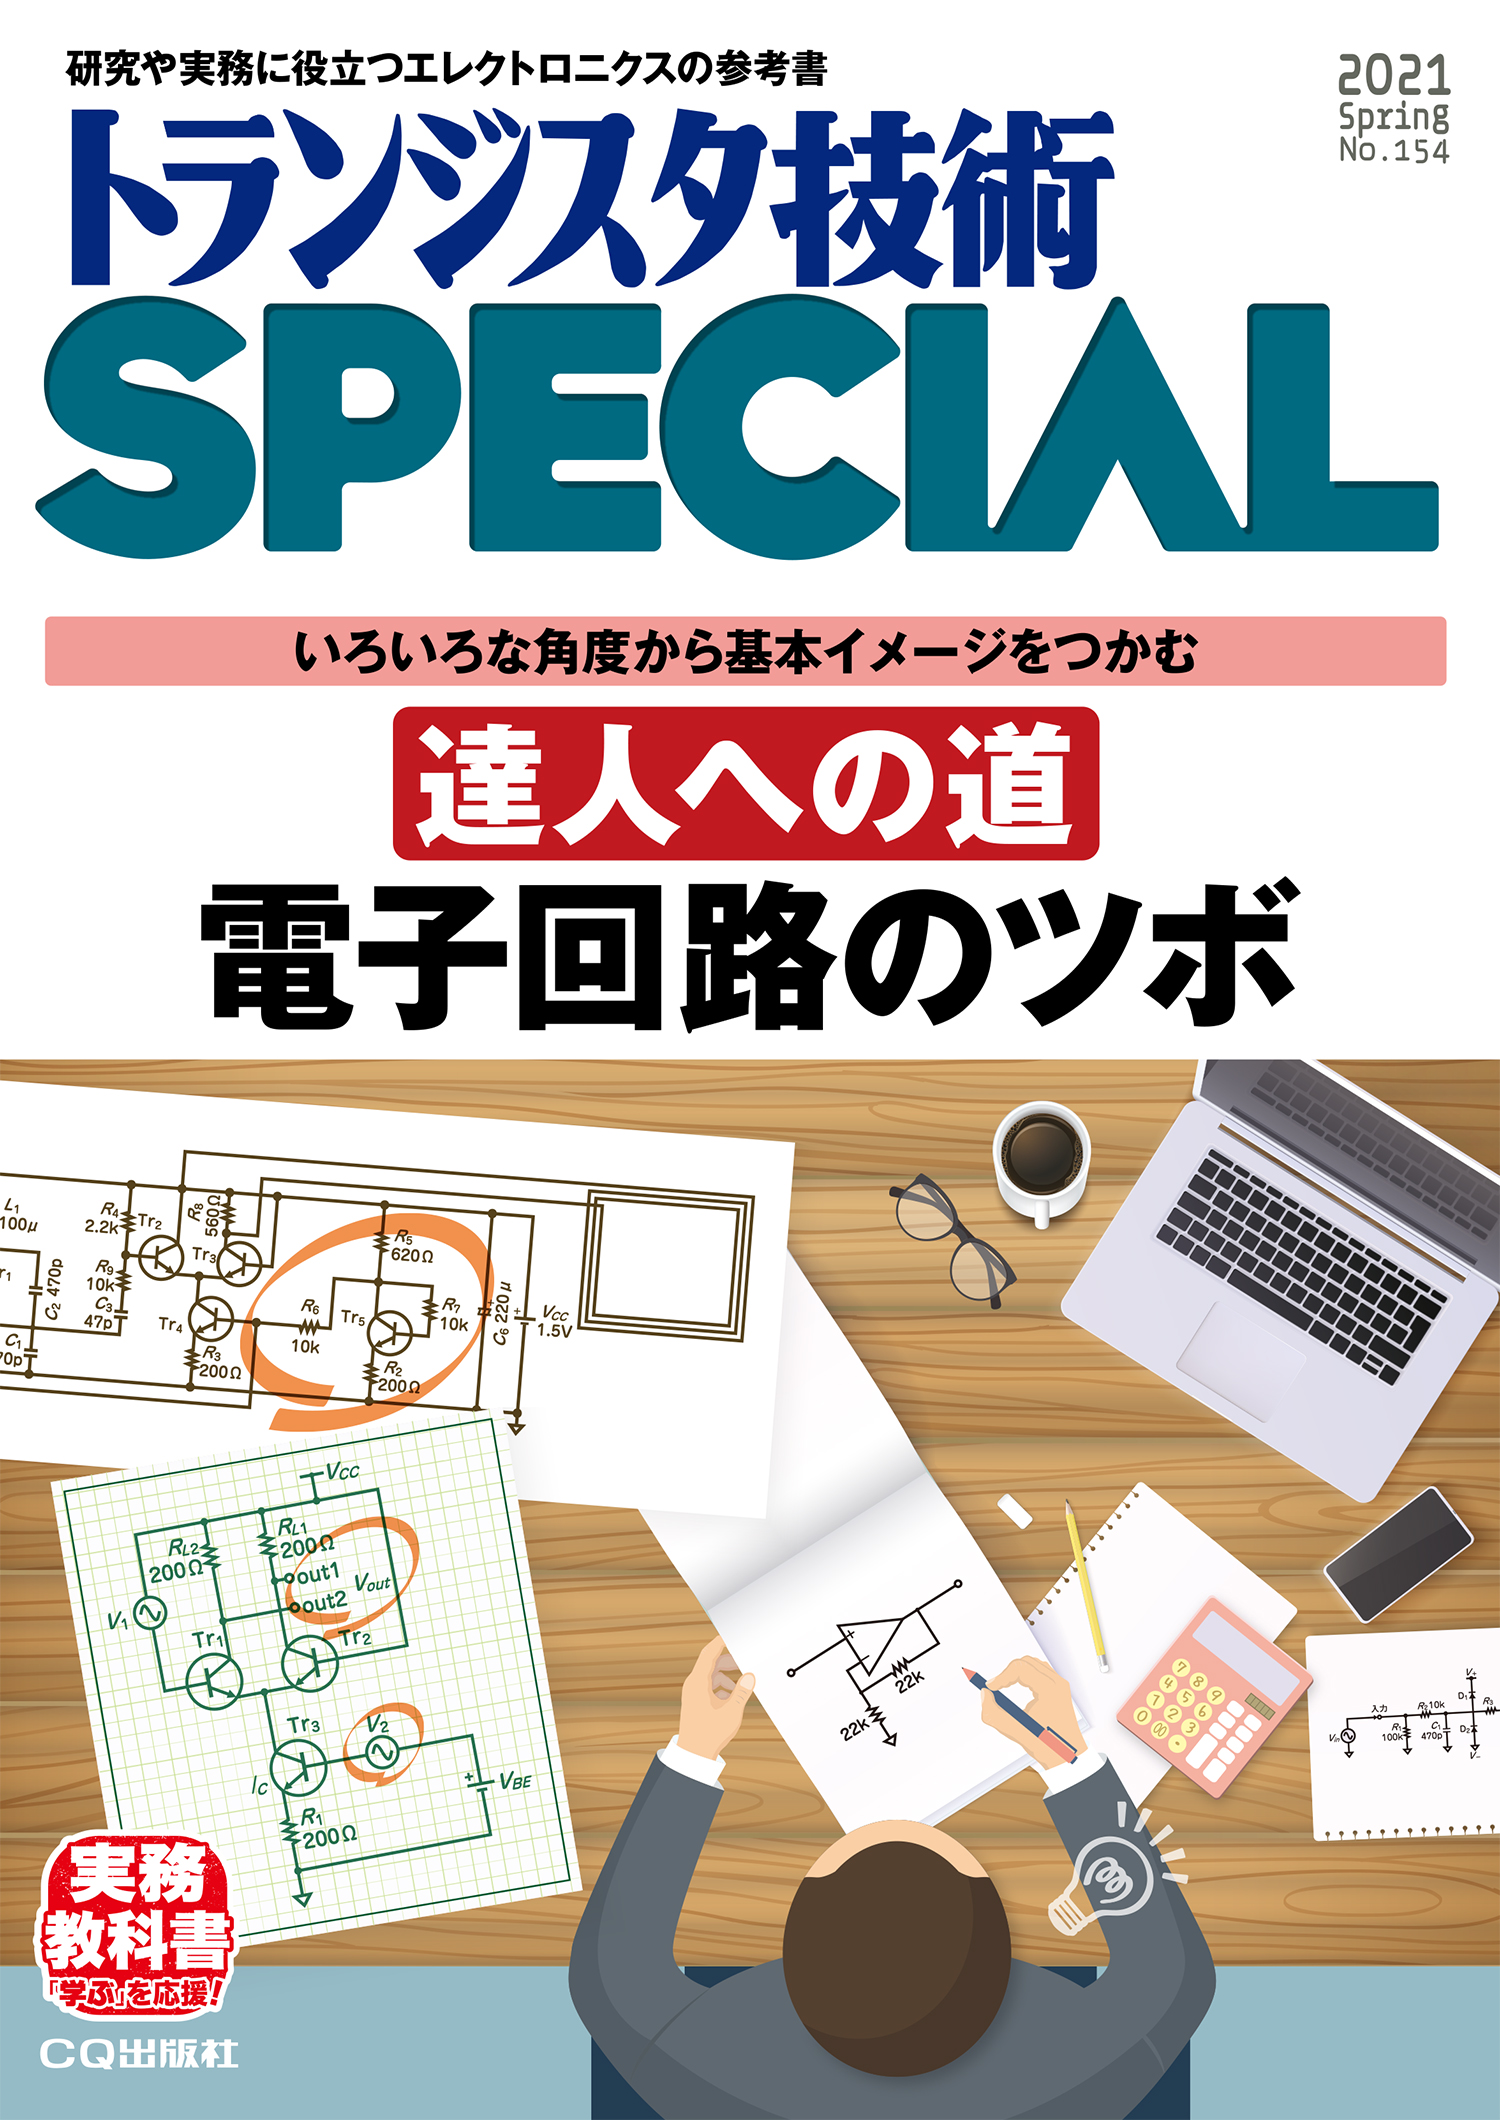 トランジスタ技術SPECIAL No.154 達人への道 電子回路のツボ【PDF版